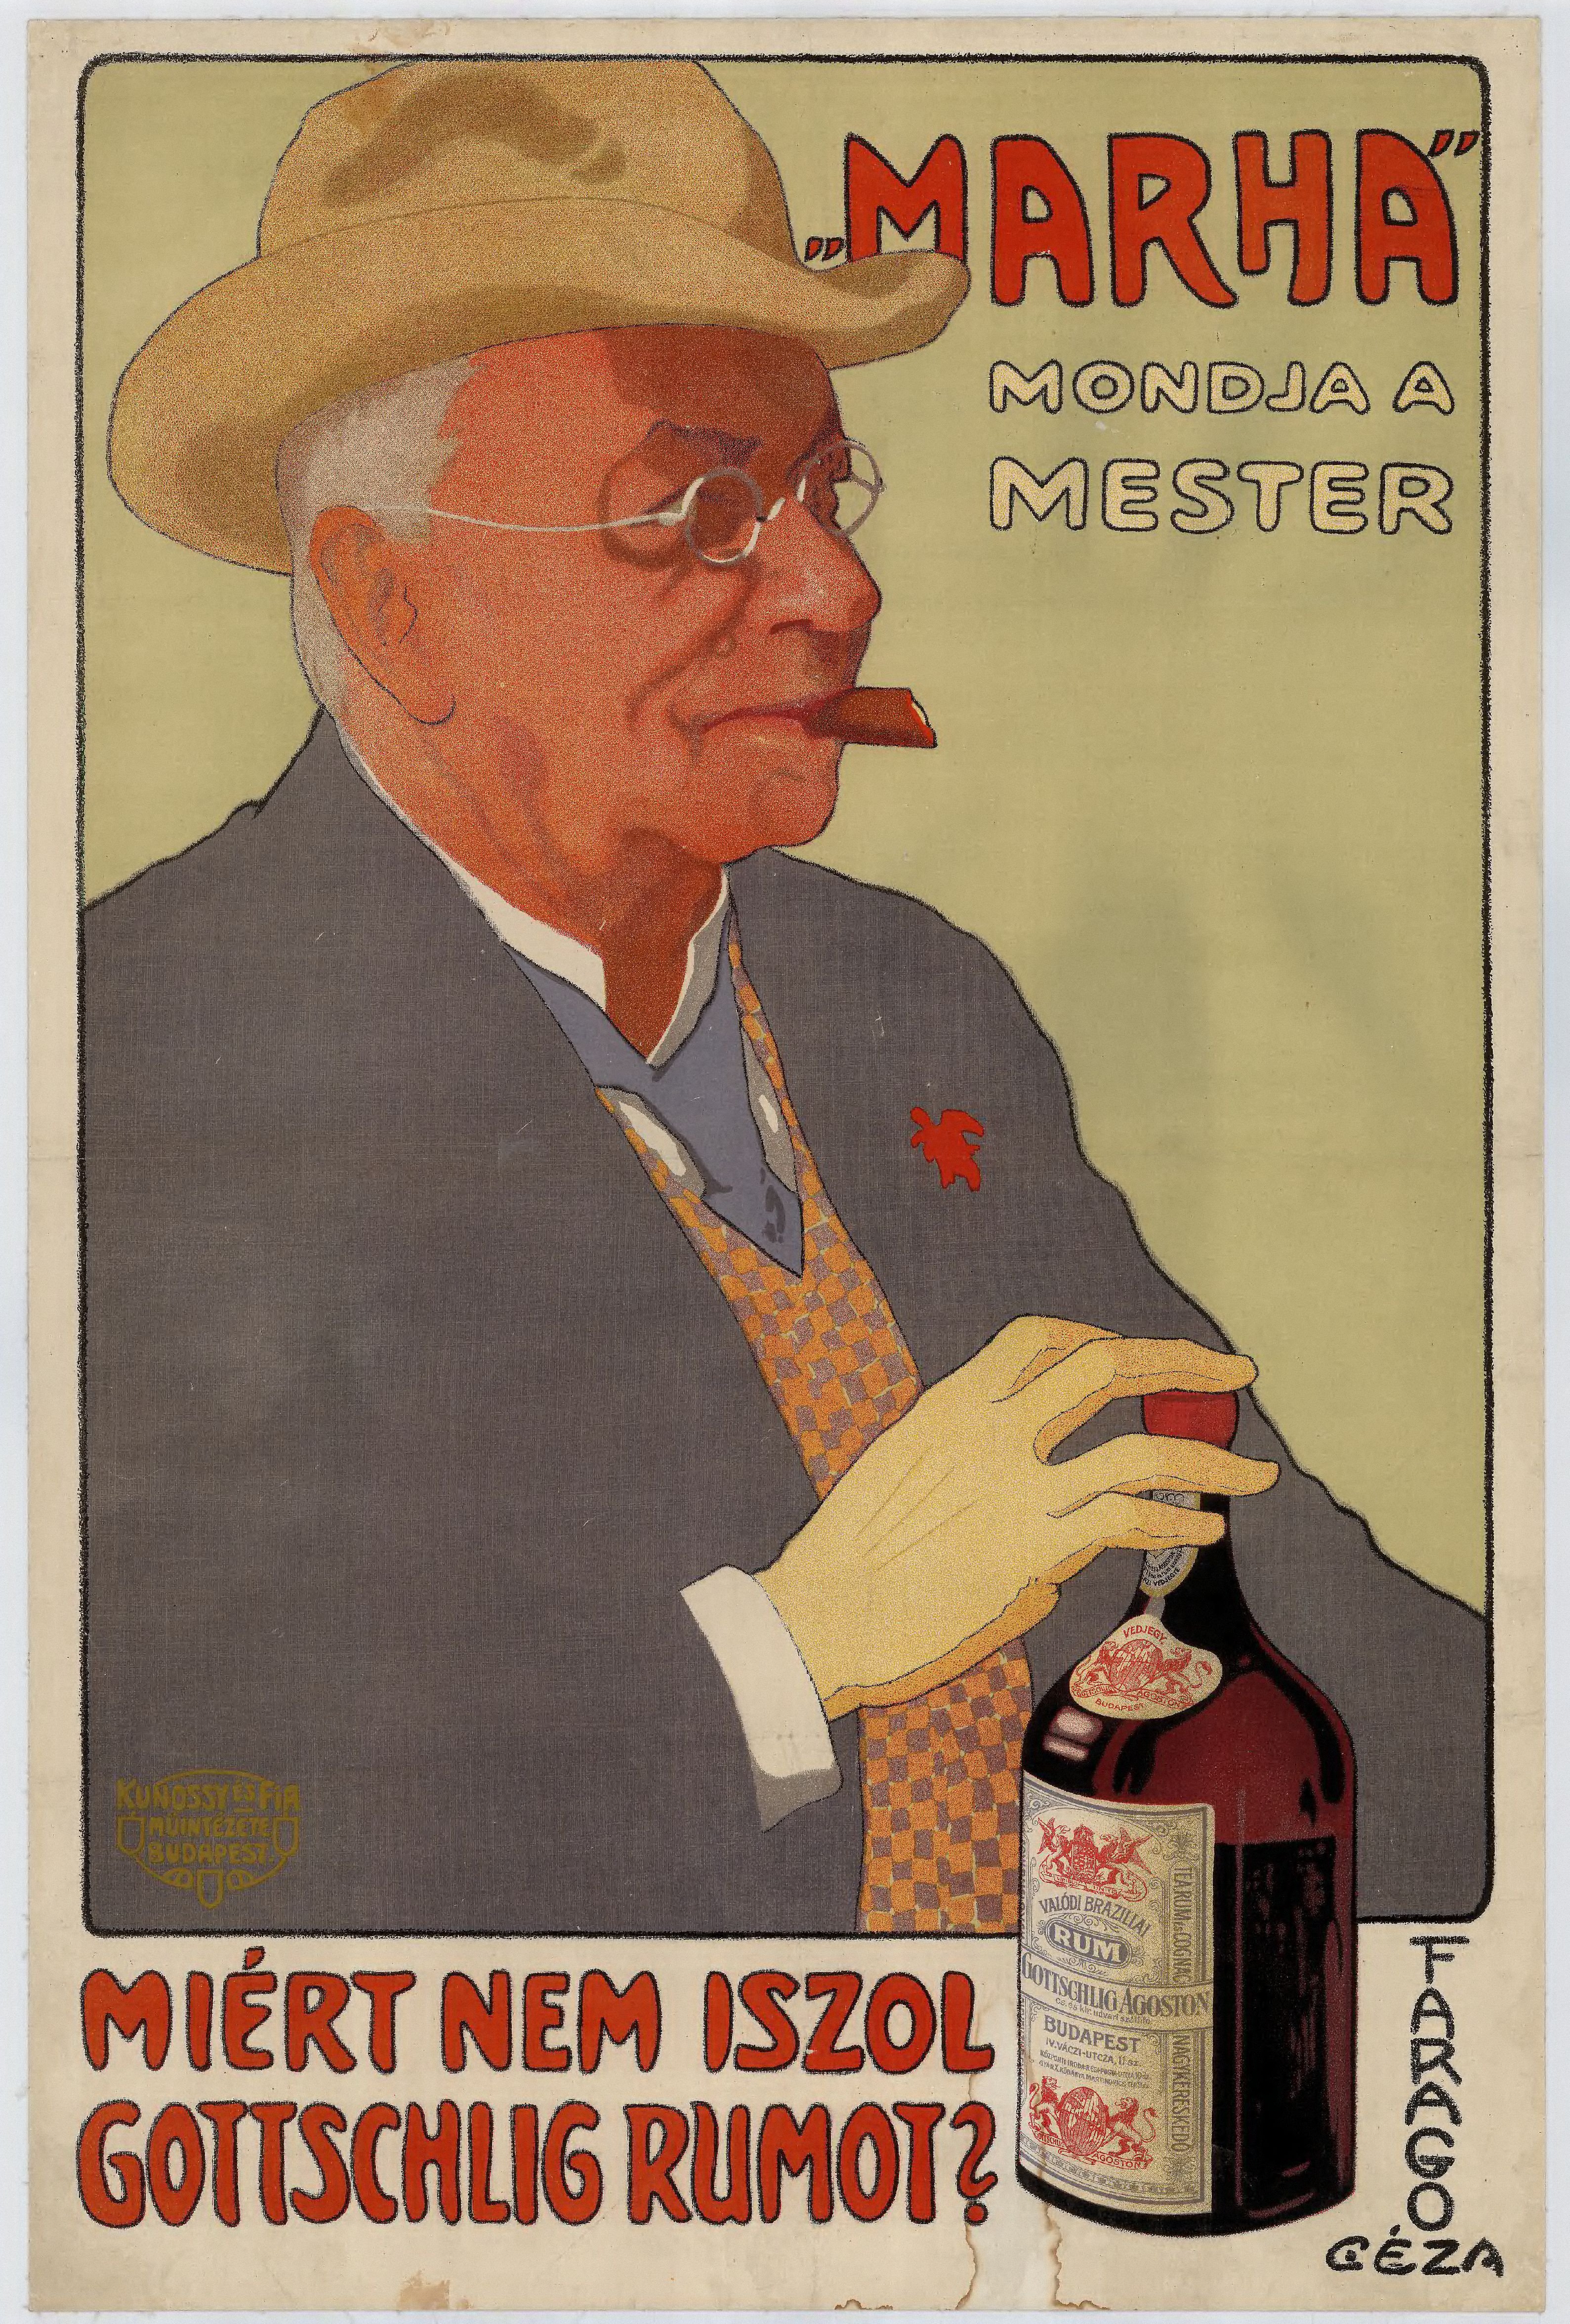 Marha mondja a mester miért nem iszol Gottschlig rumot? (Budapesti Történeti Múzeum CC BY-NC-SA)